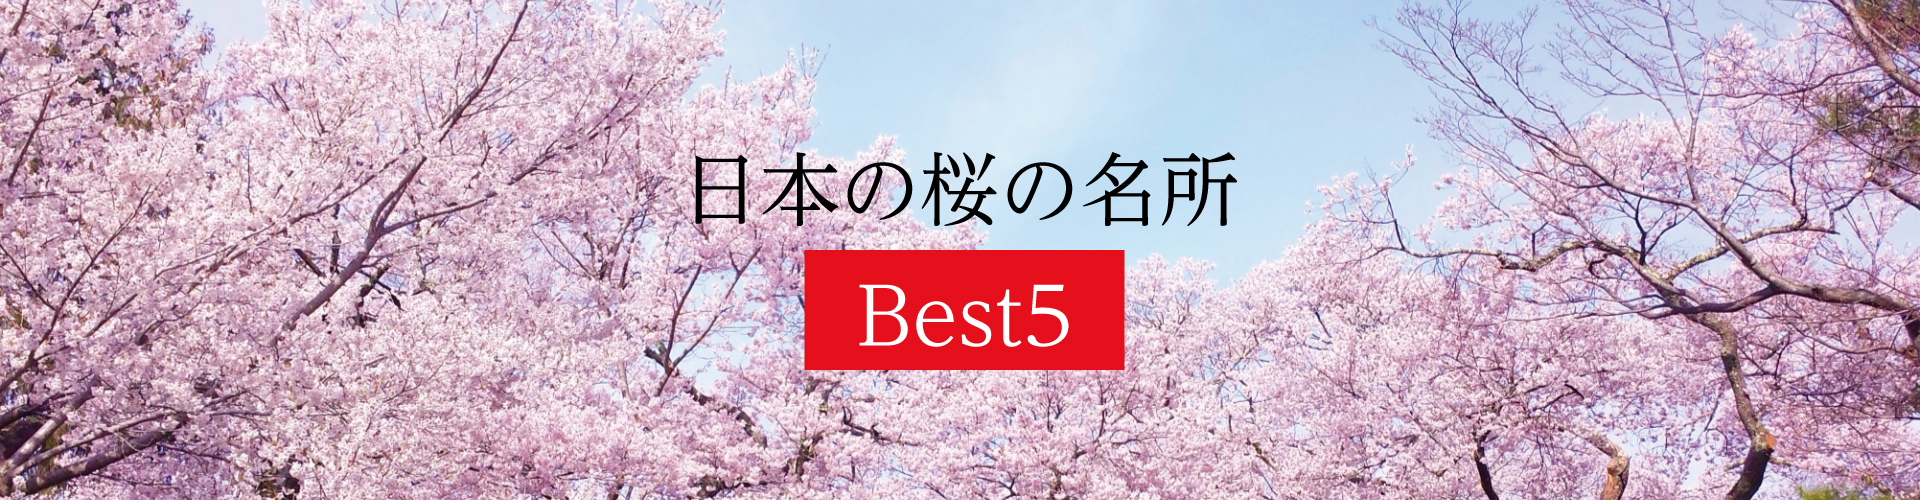 日本の桜の名所 Best5